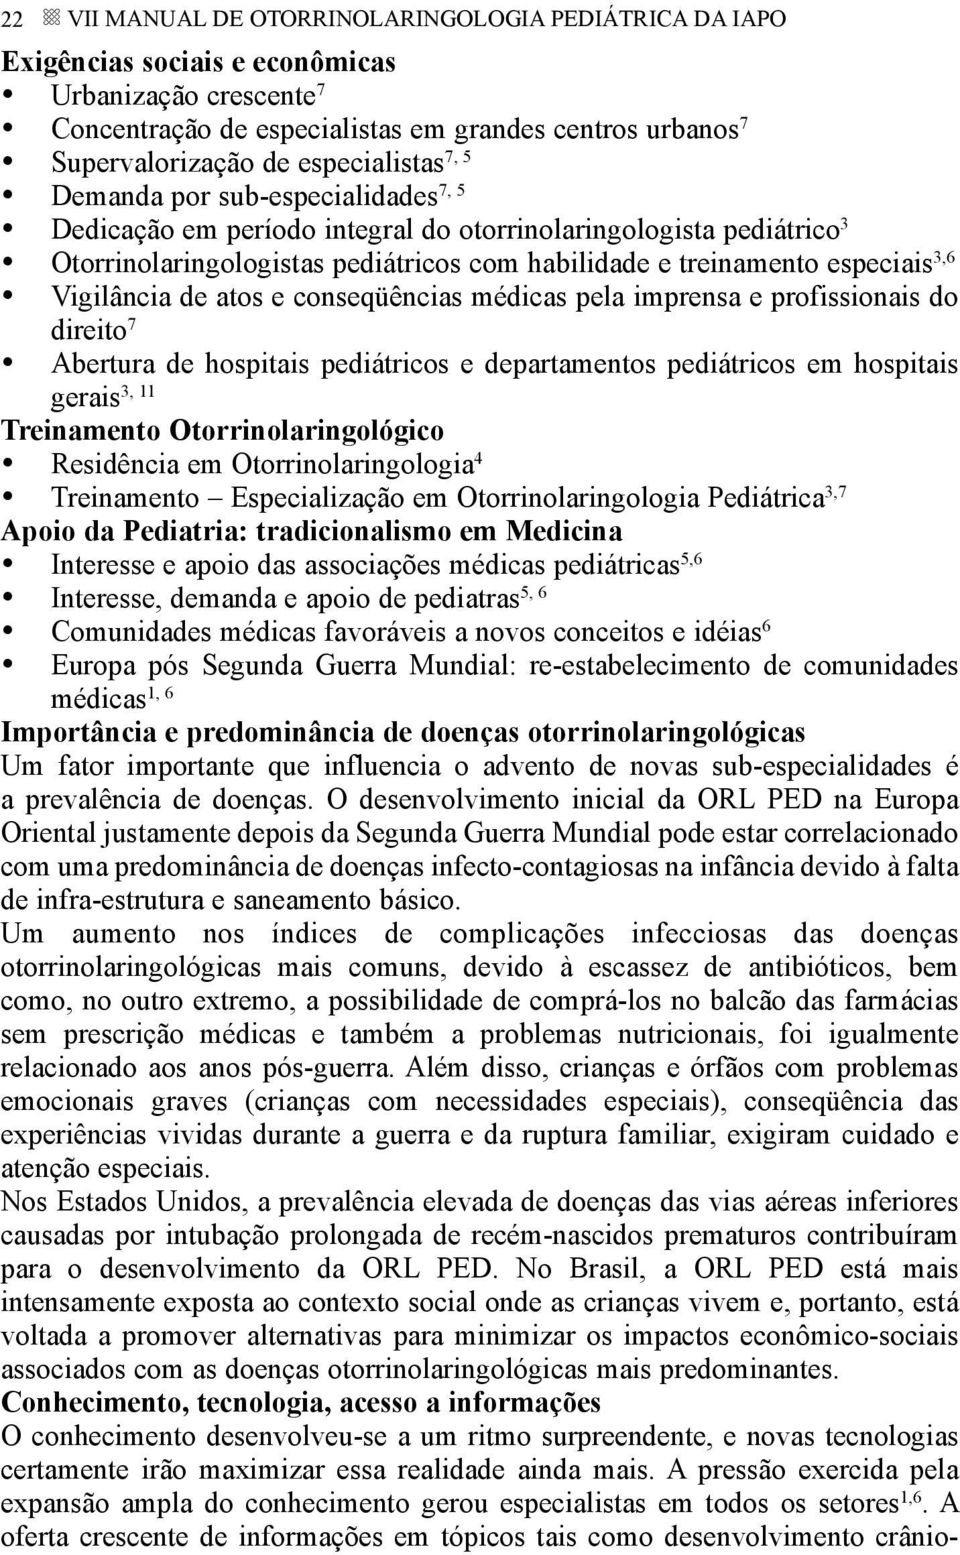 Vigilância de atos e conseqüências médicas pela imprensa e profissionais do direito Abertura de hospitais pediátricos e departamentos pediátricos em hospitais 3, 11 gerais Treinamento